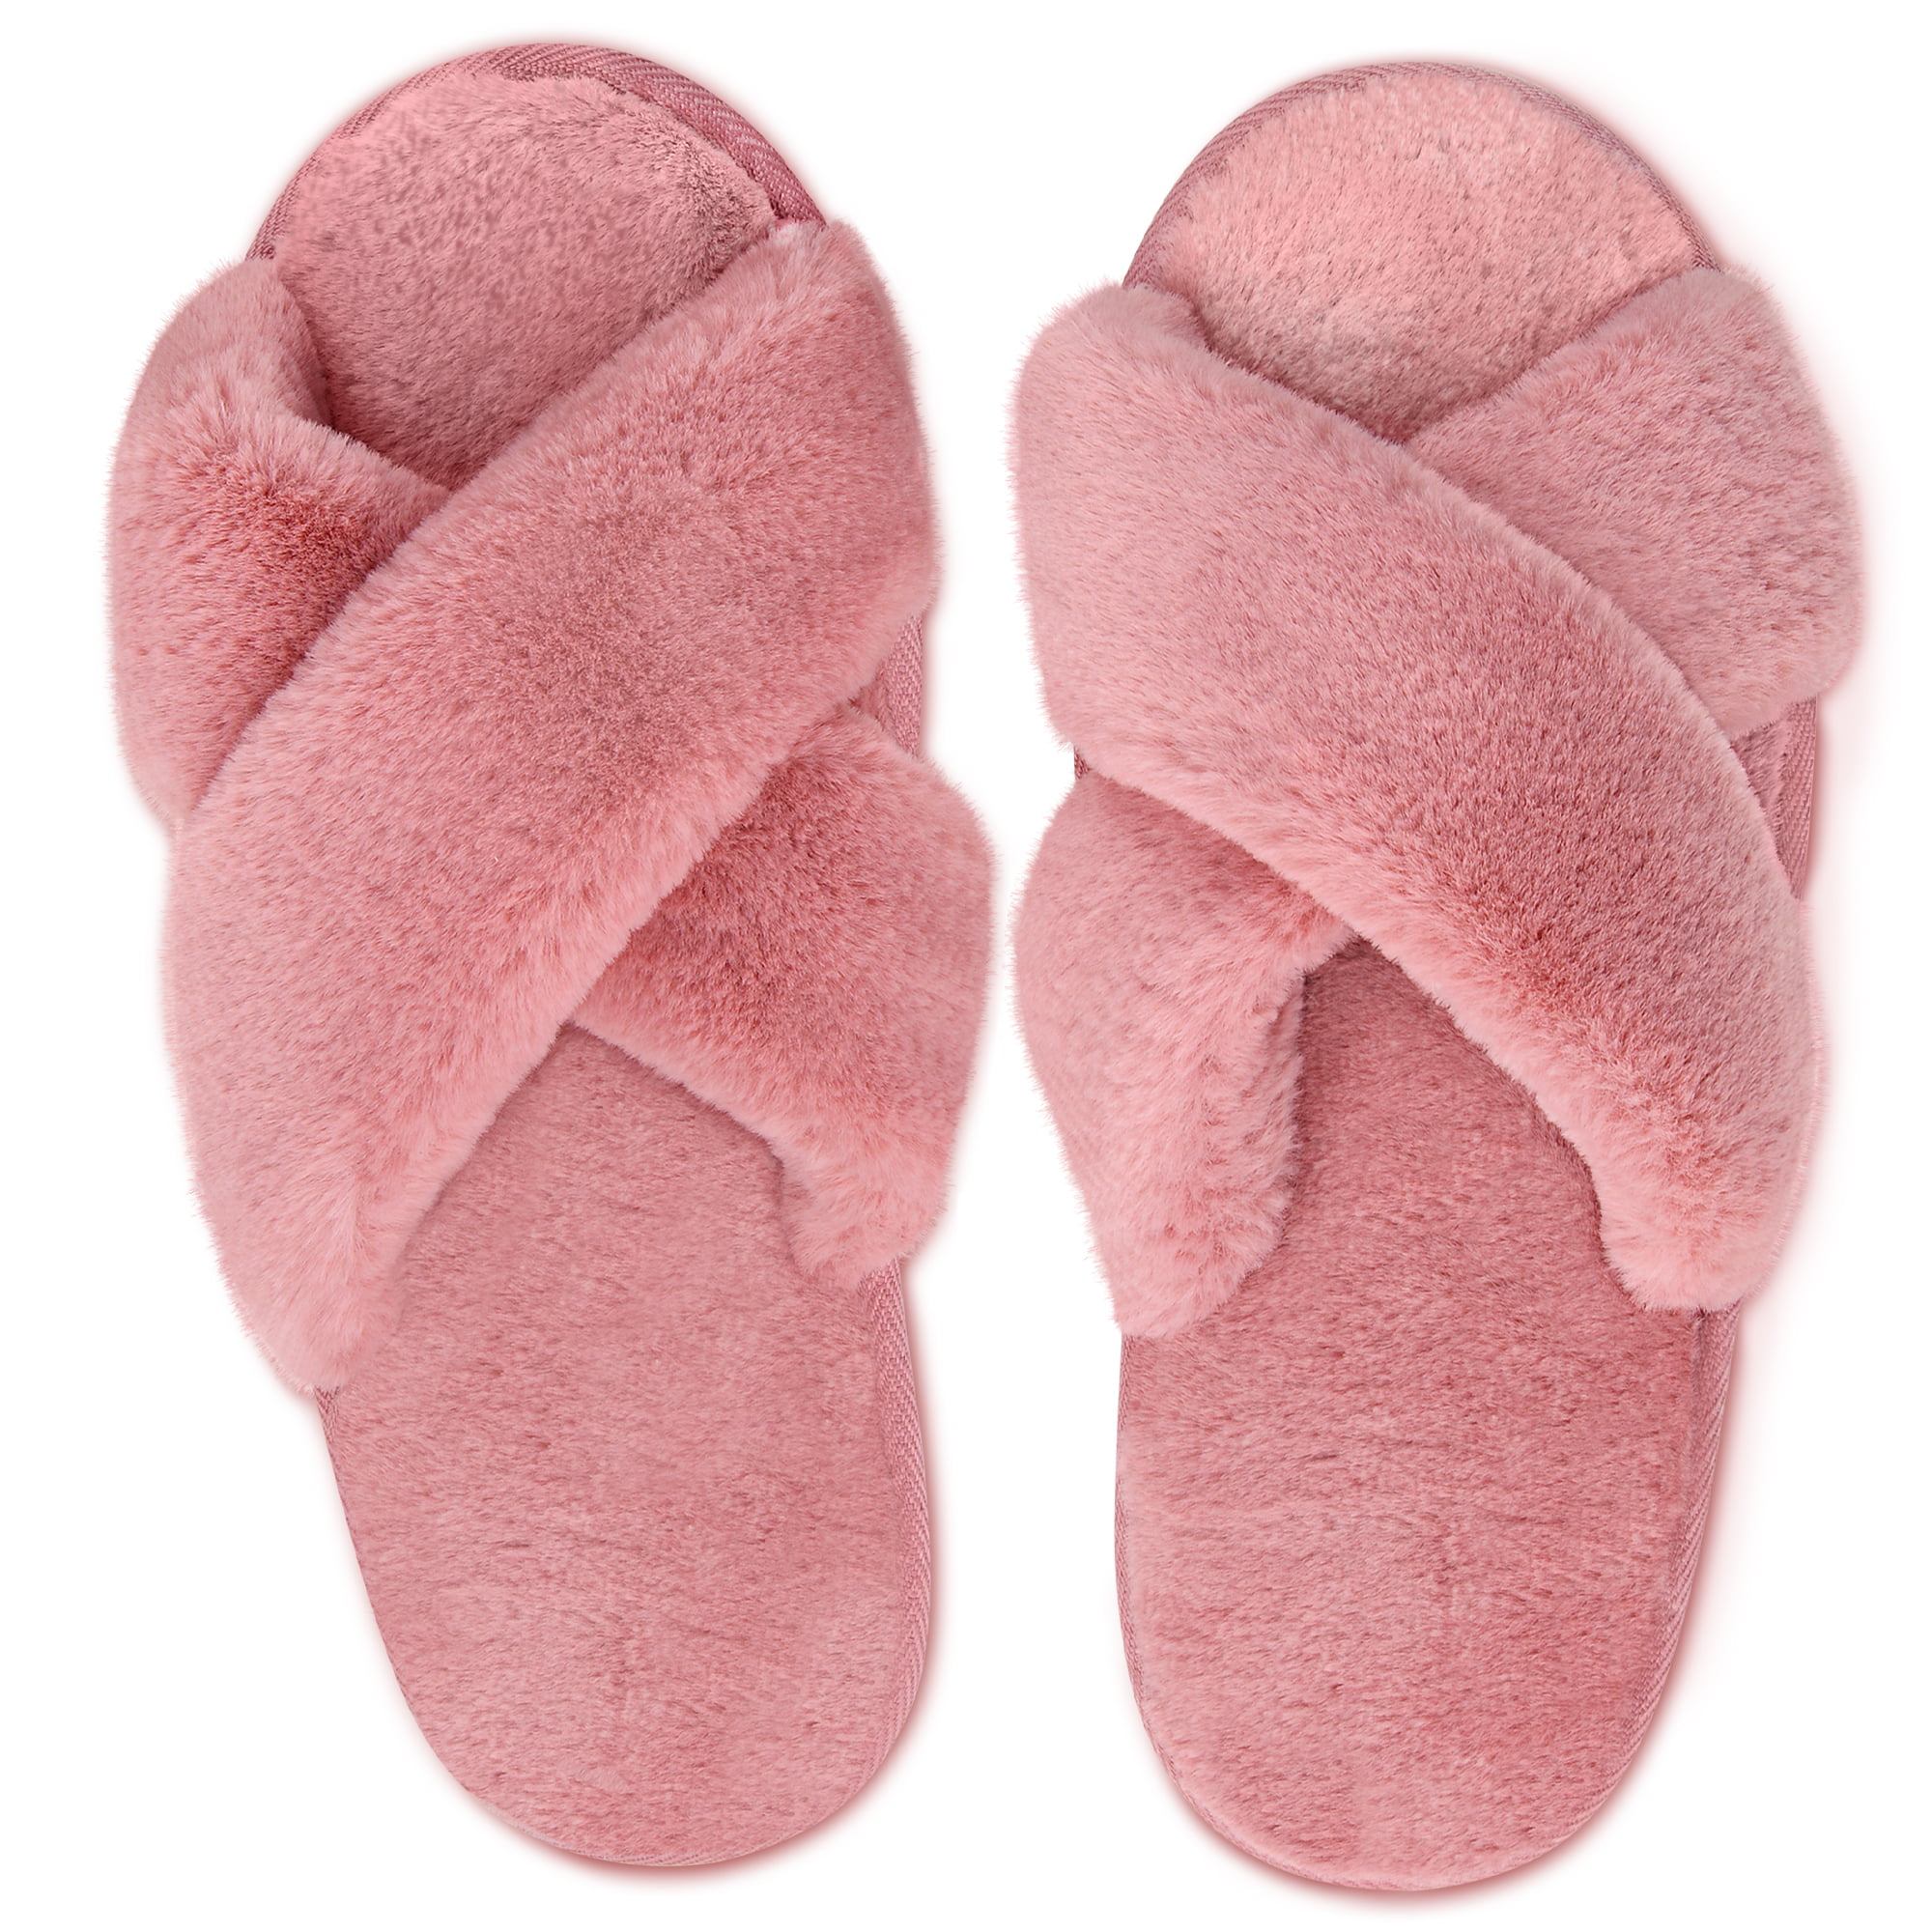 poop emoji slippers walmart